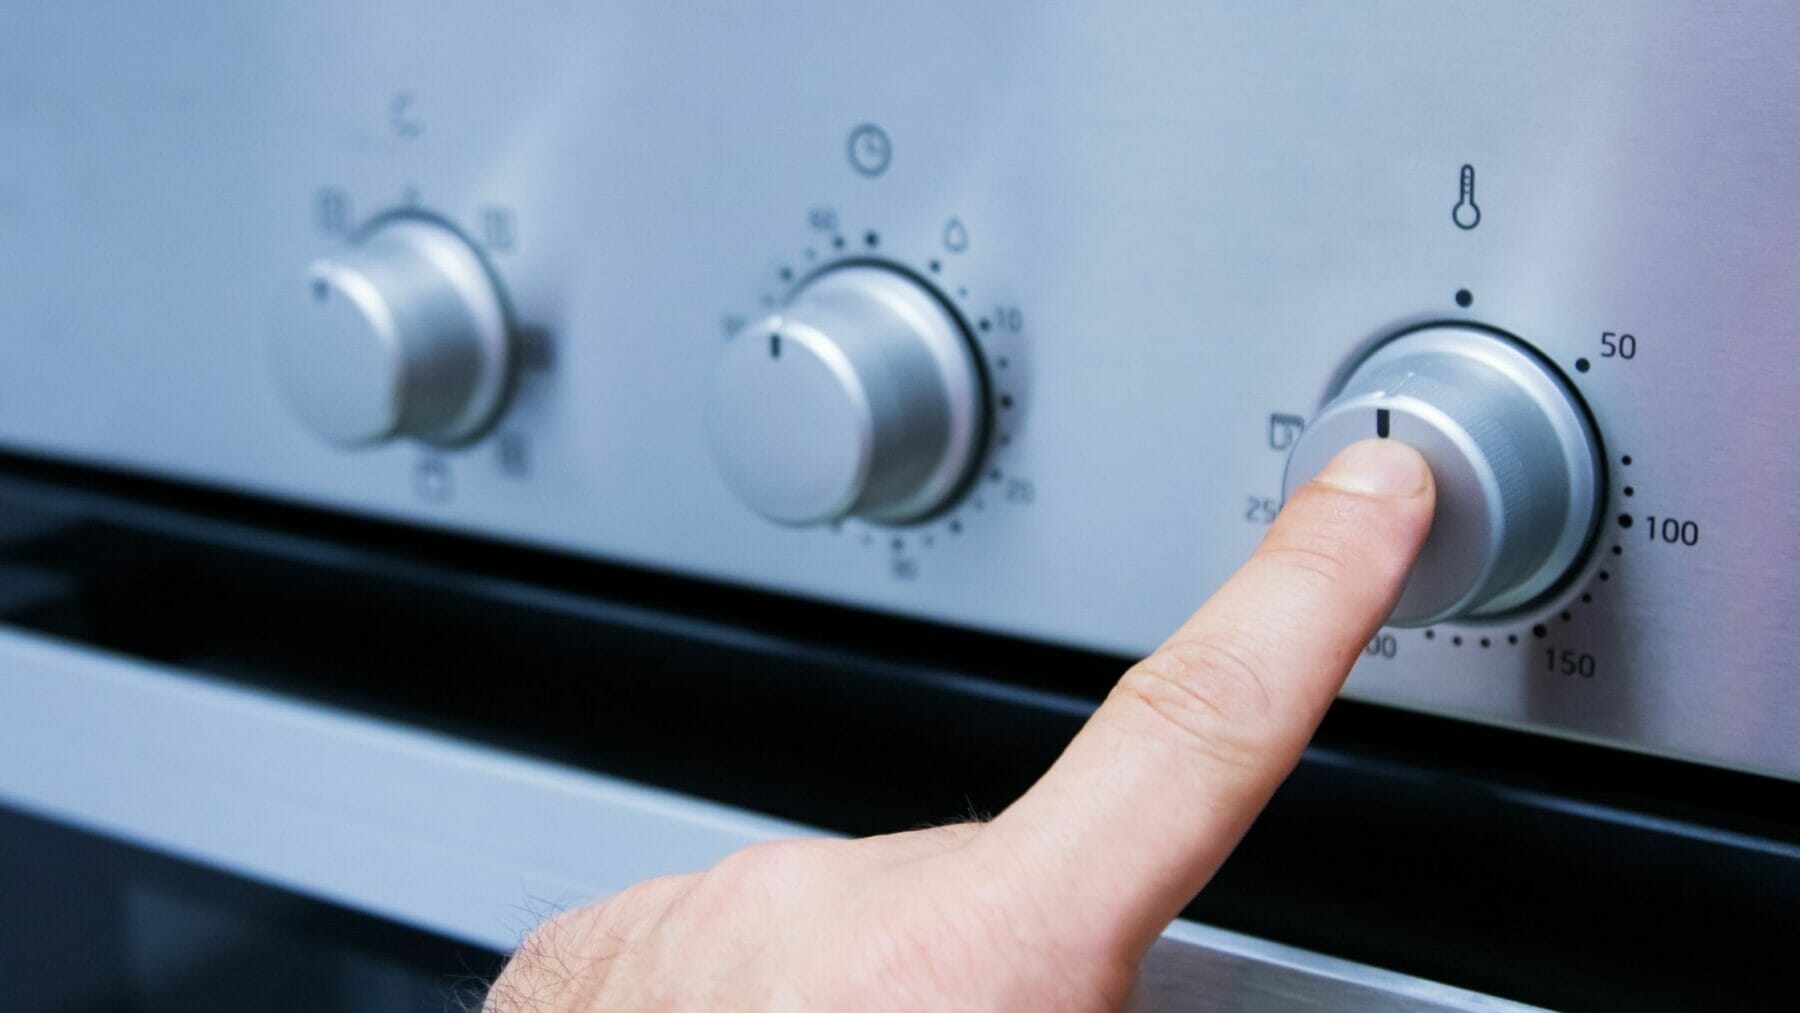 Finger pushing energy efficient stove nob.